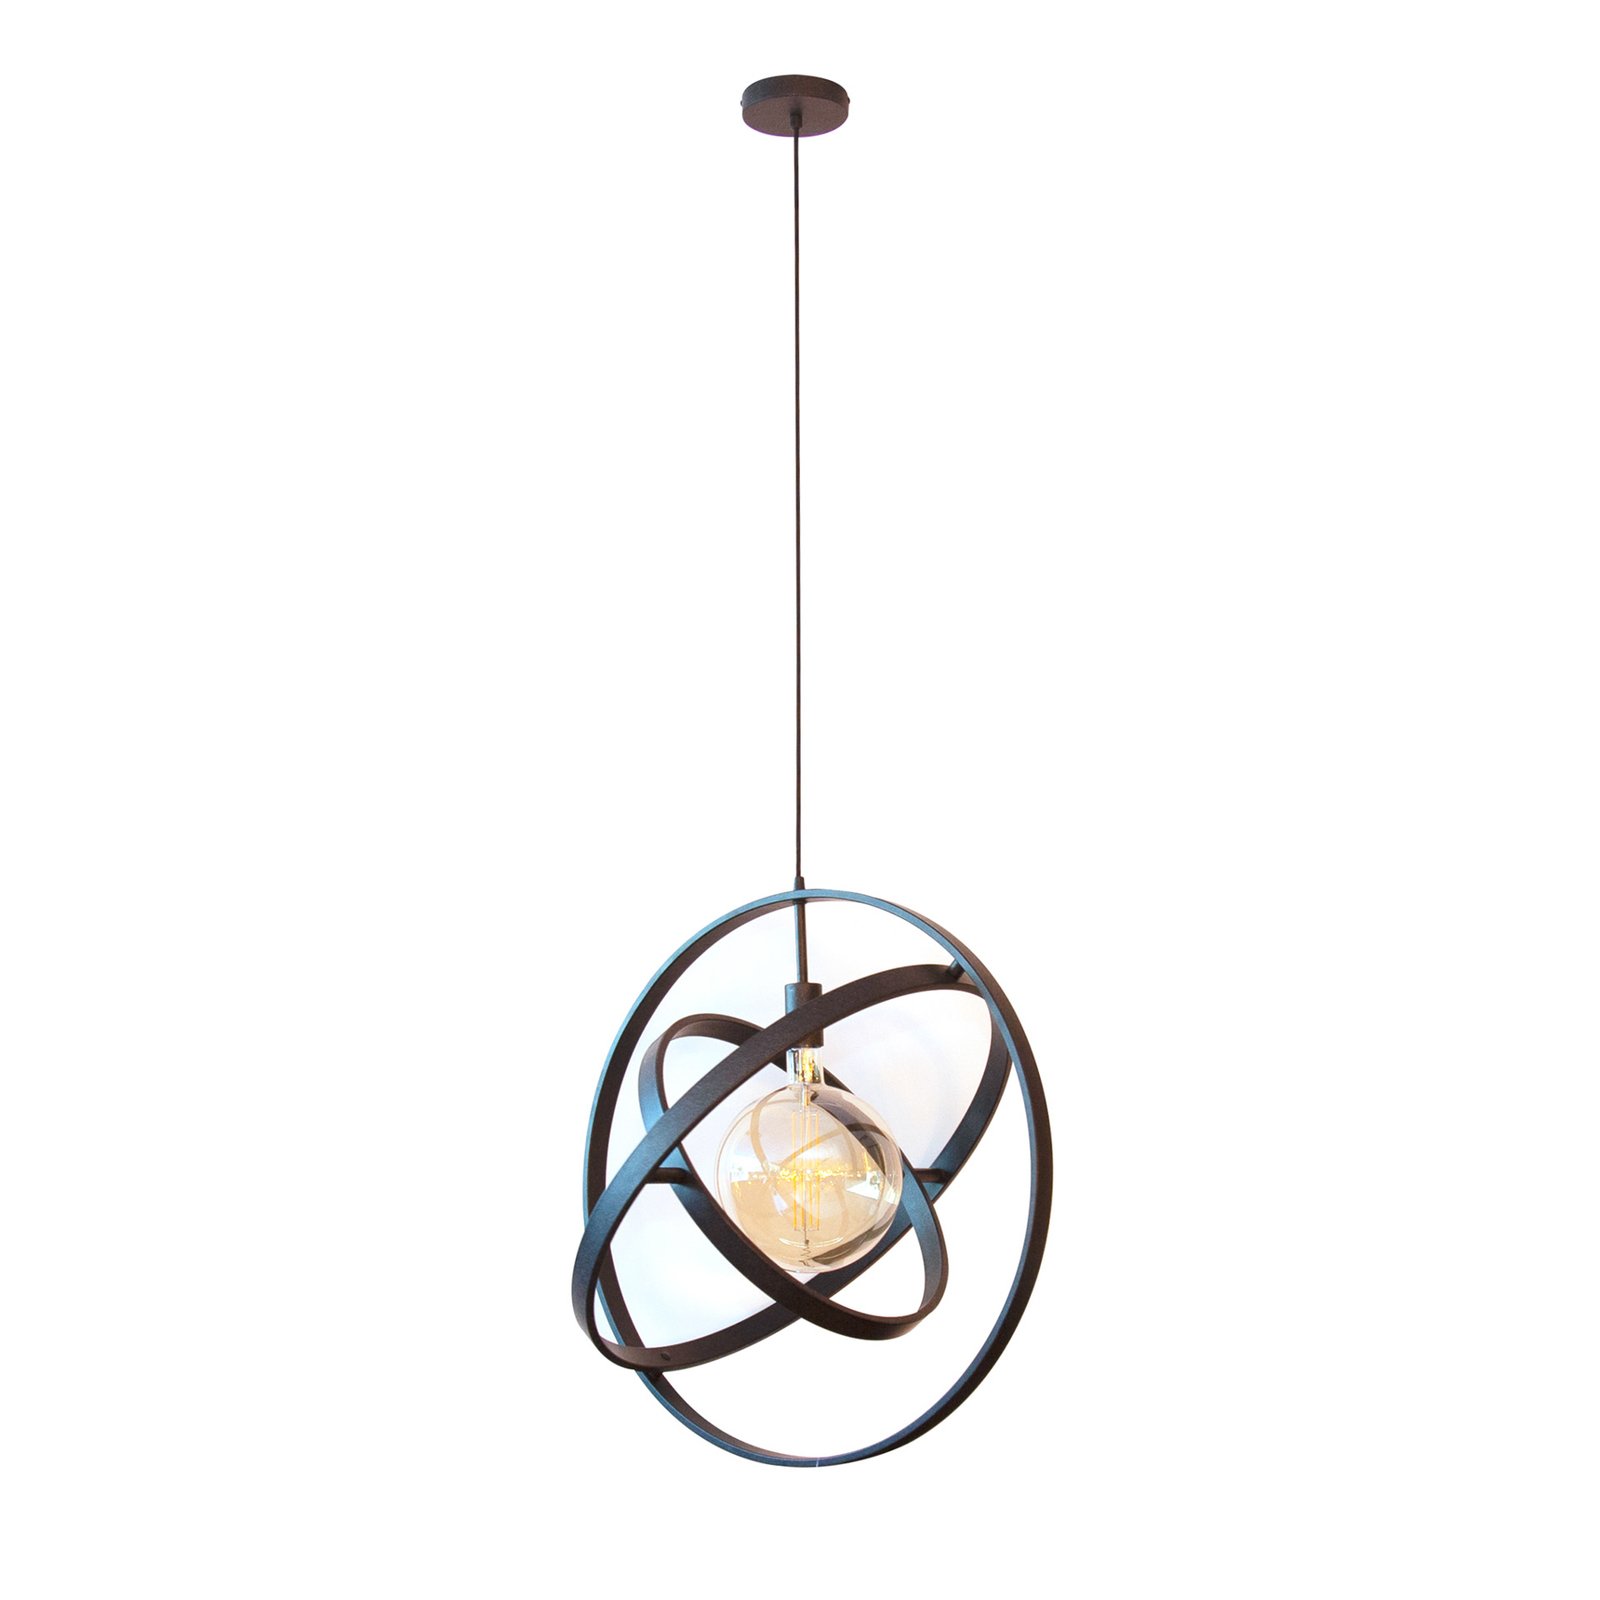 Hanglamp Orbit met drie ringen, 1-lamp, zwart